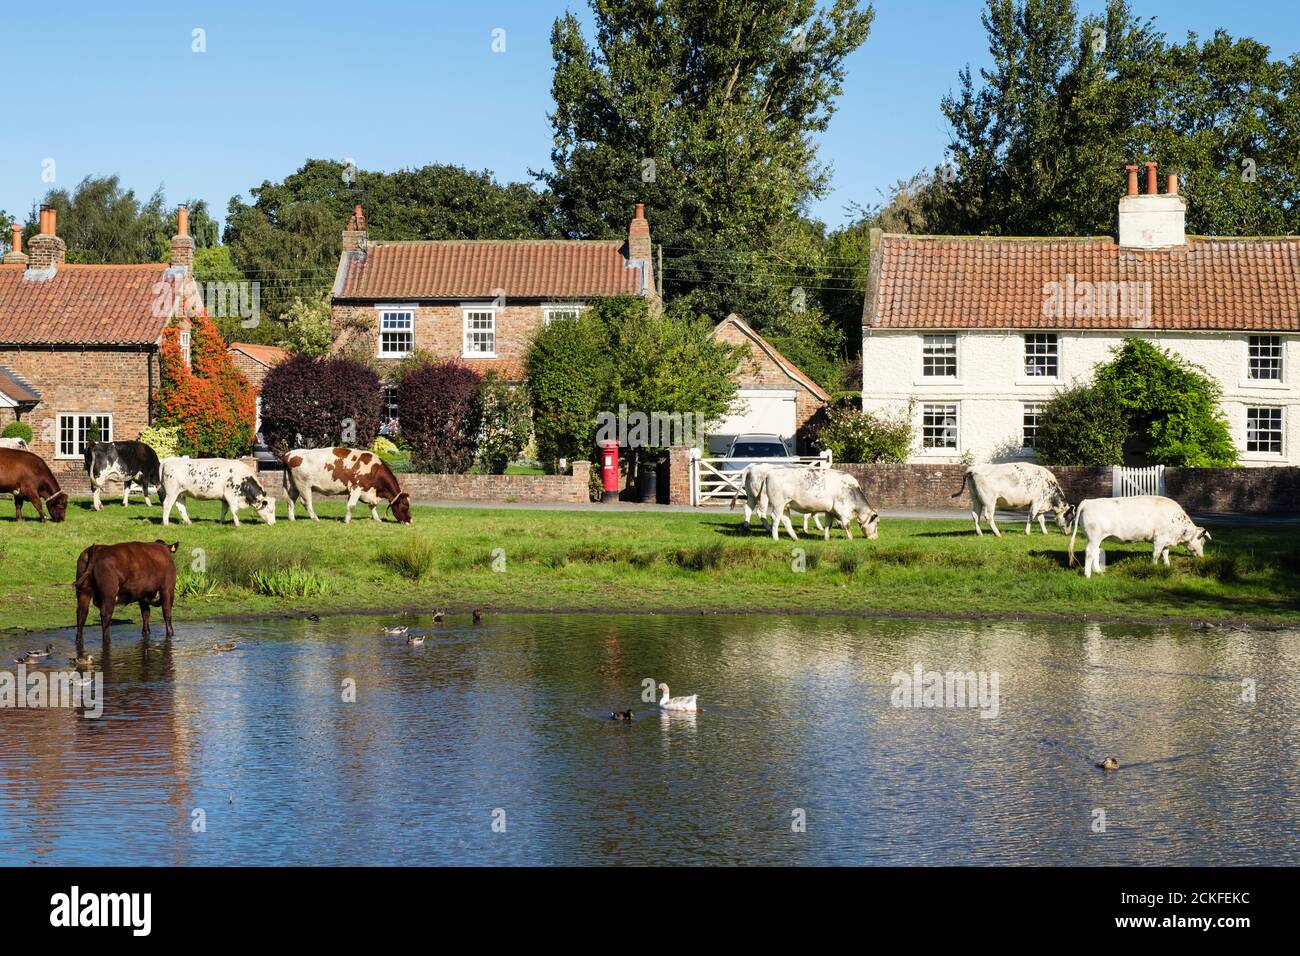 Scena rurale con allevamento di bestiame libero da un laghetto d'anatra su un paese inglese verde. Nun Monkton York North Yorkshire Inghilterra Gran Bretagna Foto Stock